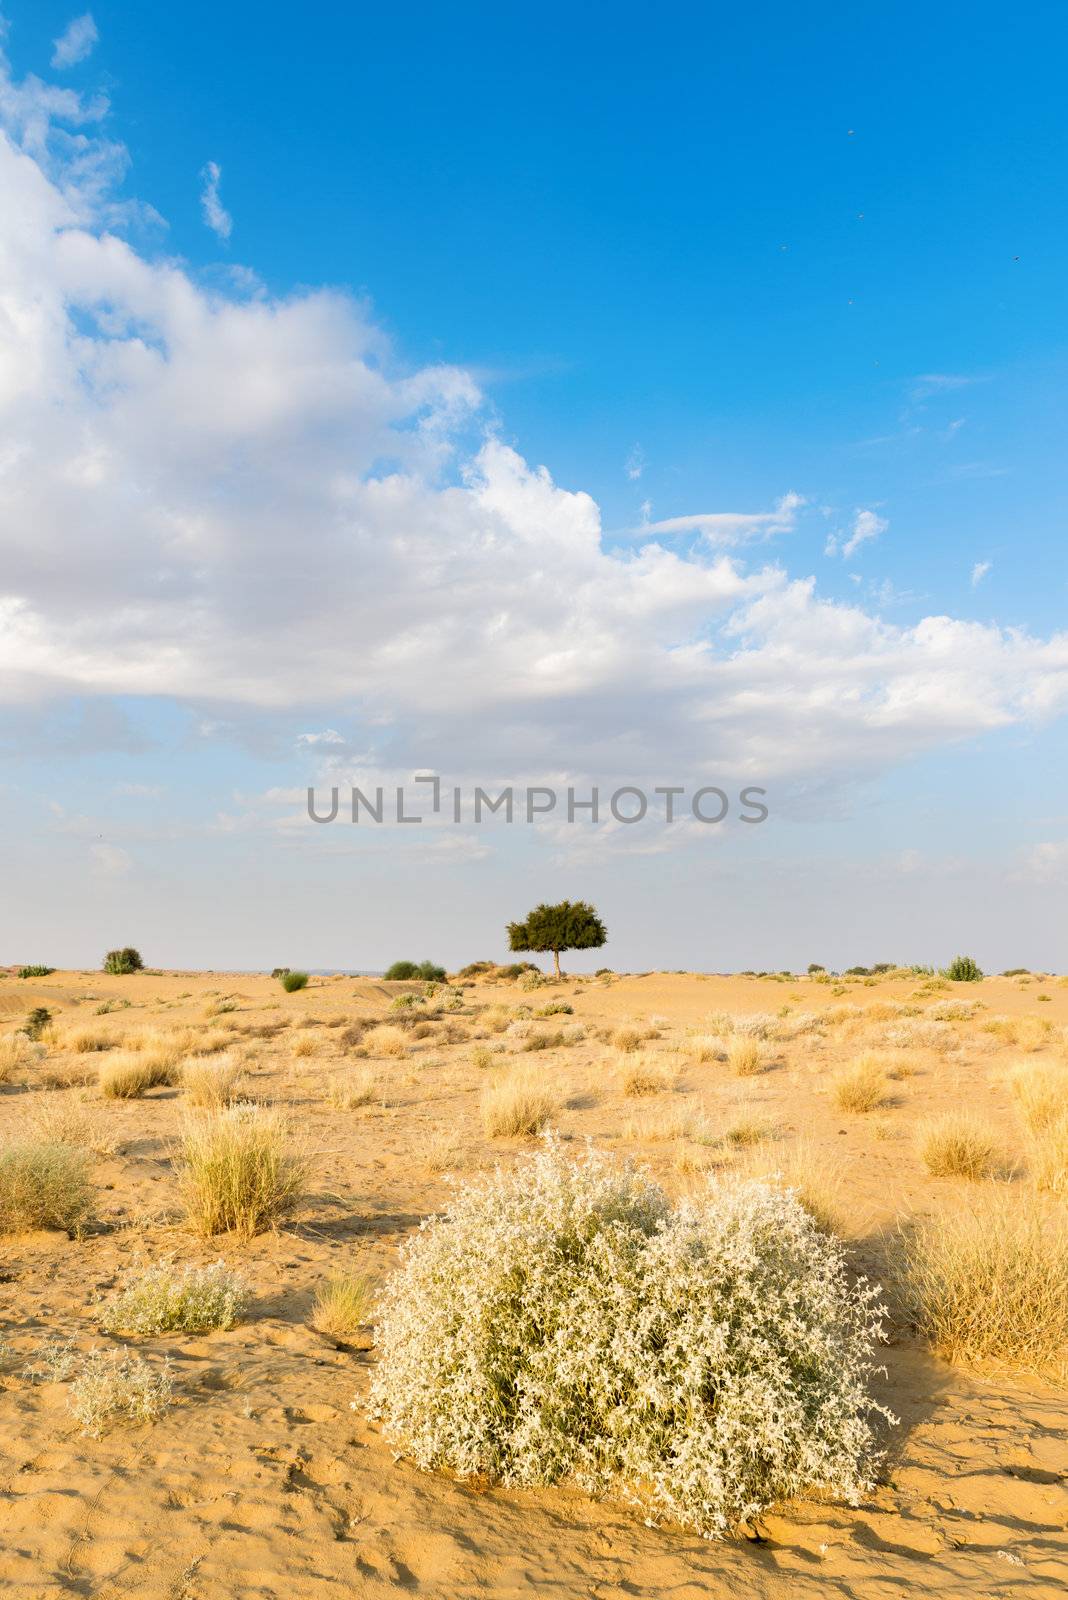 One rhejri (prosopis cineraria) tree in the thar desert (great indian desert) under cloudy blue sky